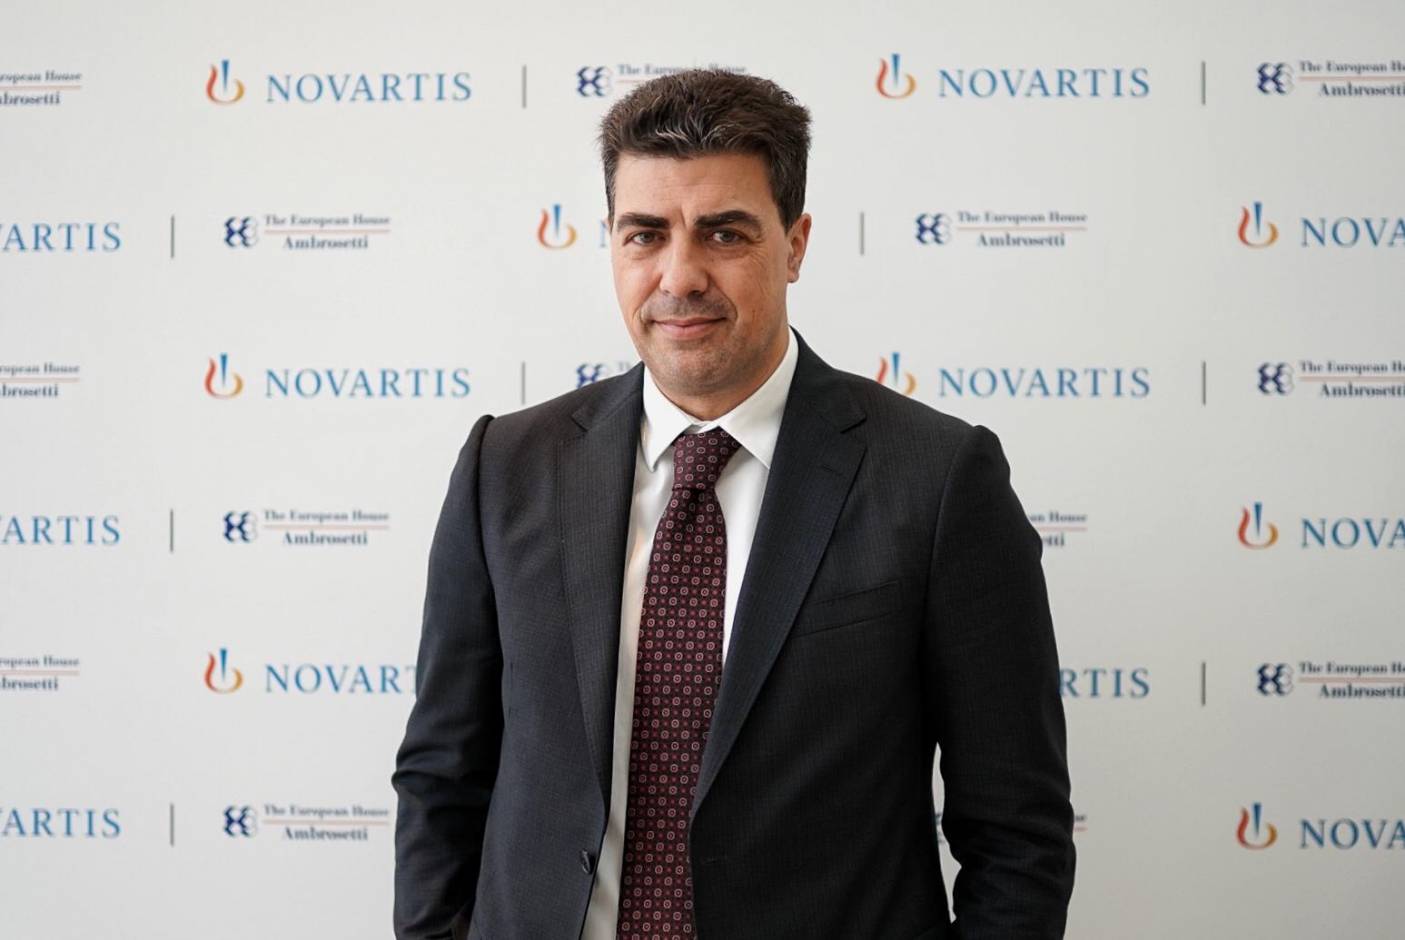 Novartis pronta ad avviare partnership con Regioni per sanità più vicina a cittadini